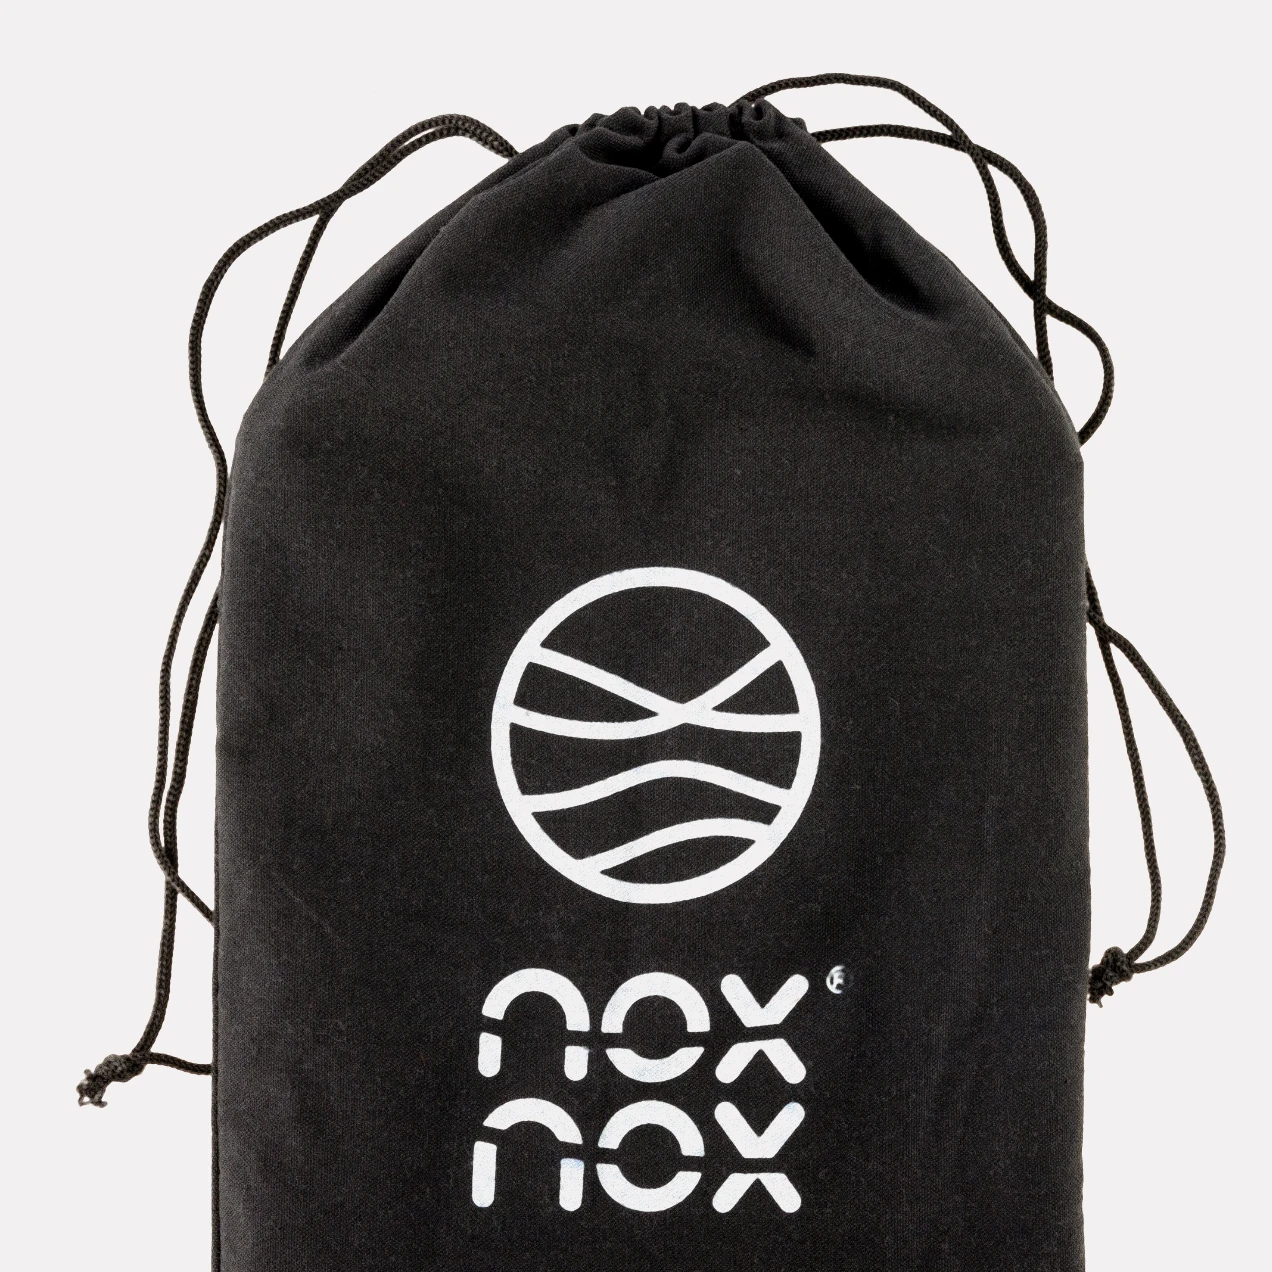 NOXNOX black packaging copy